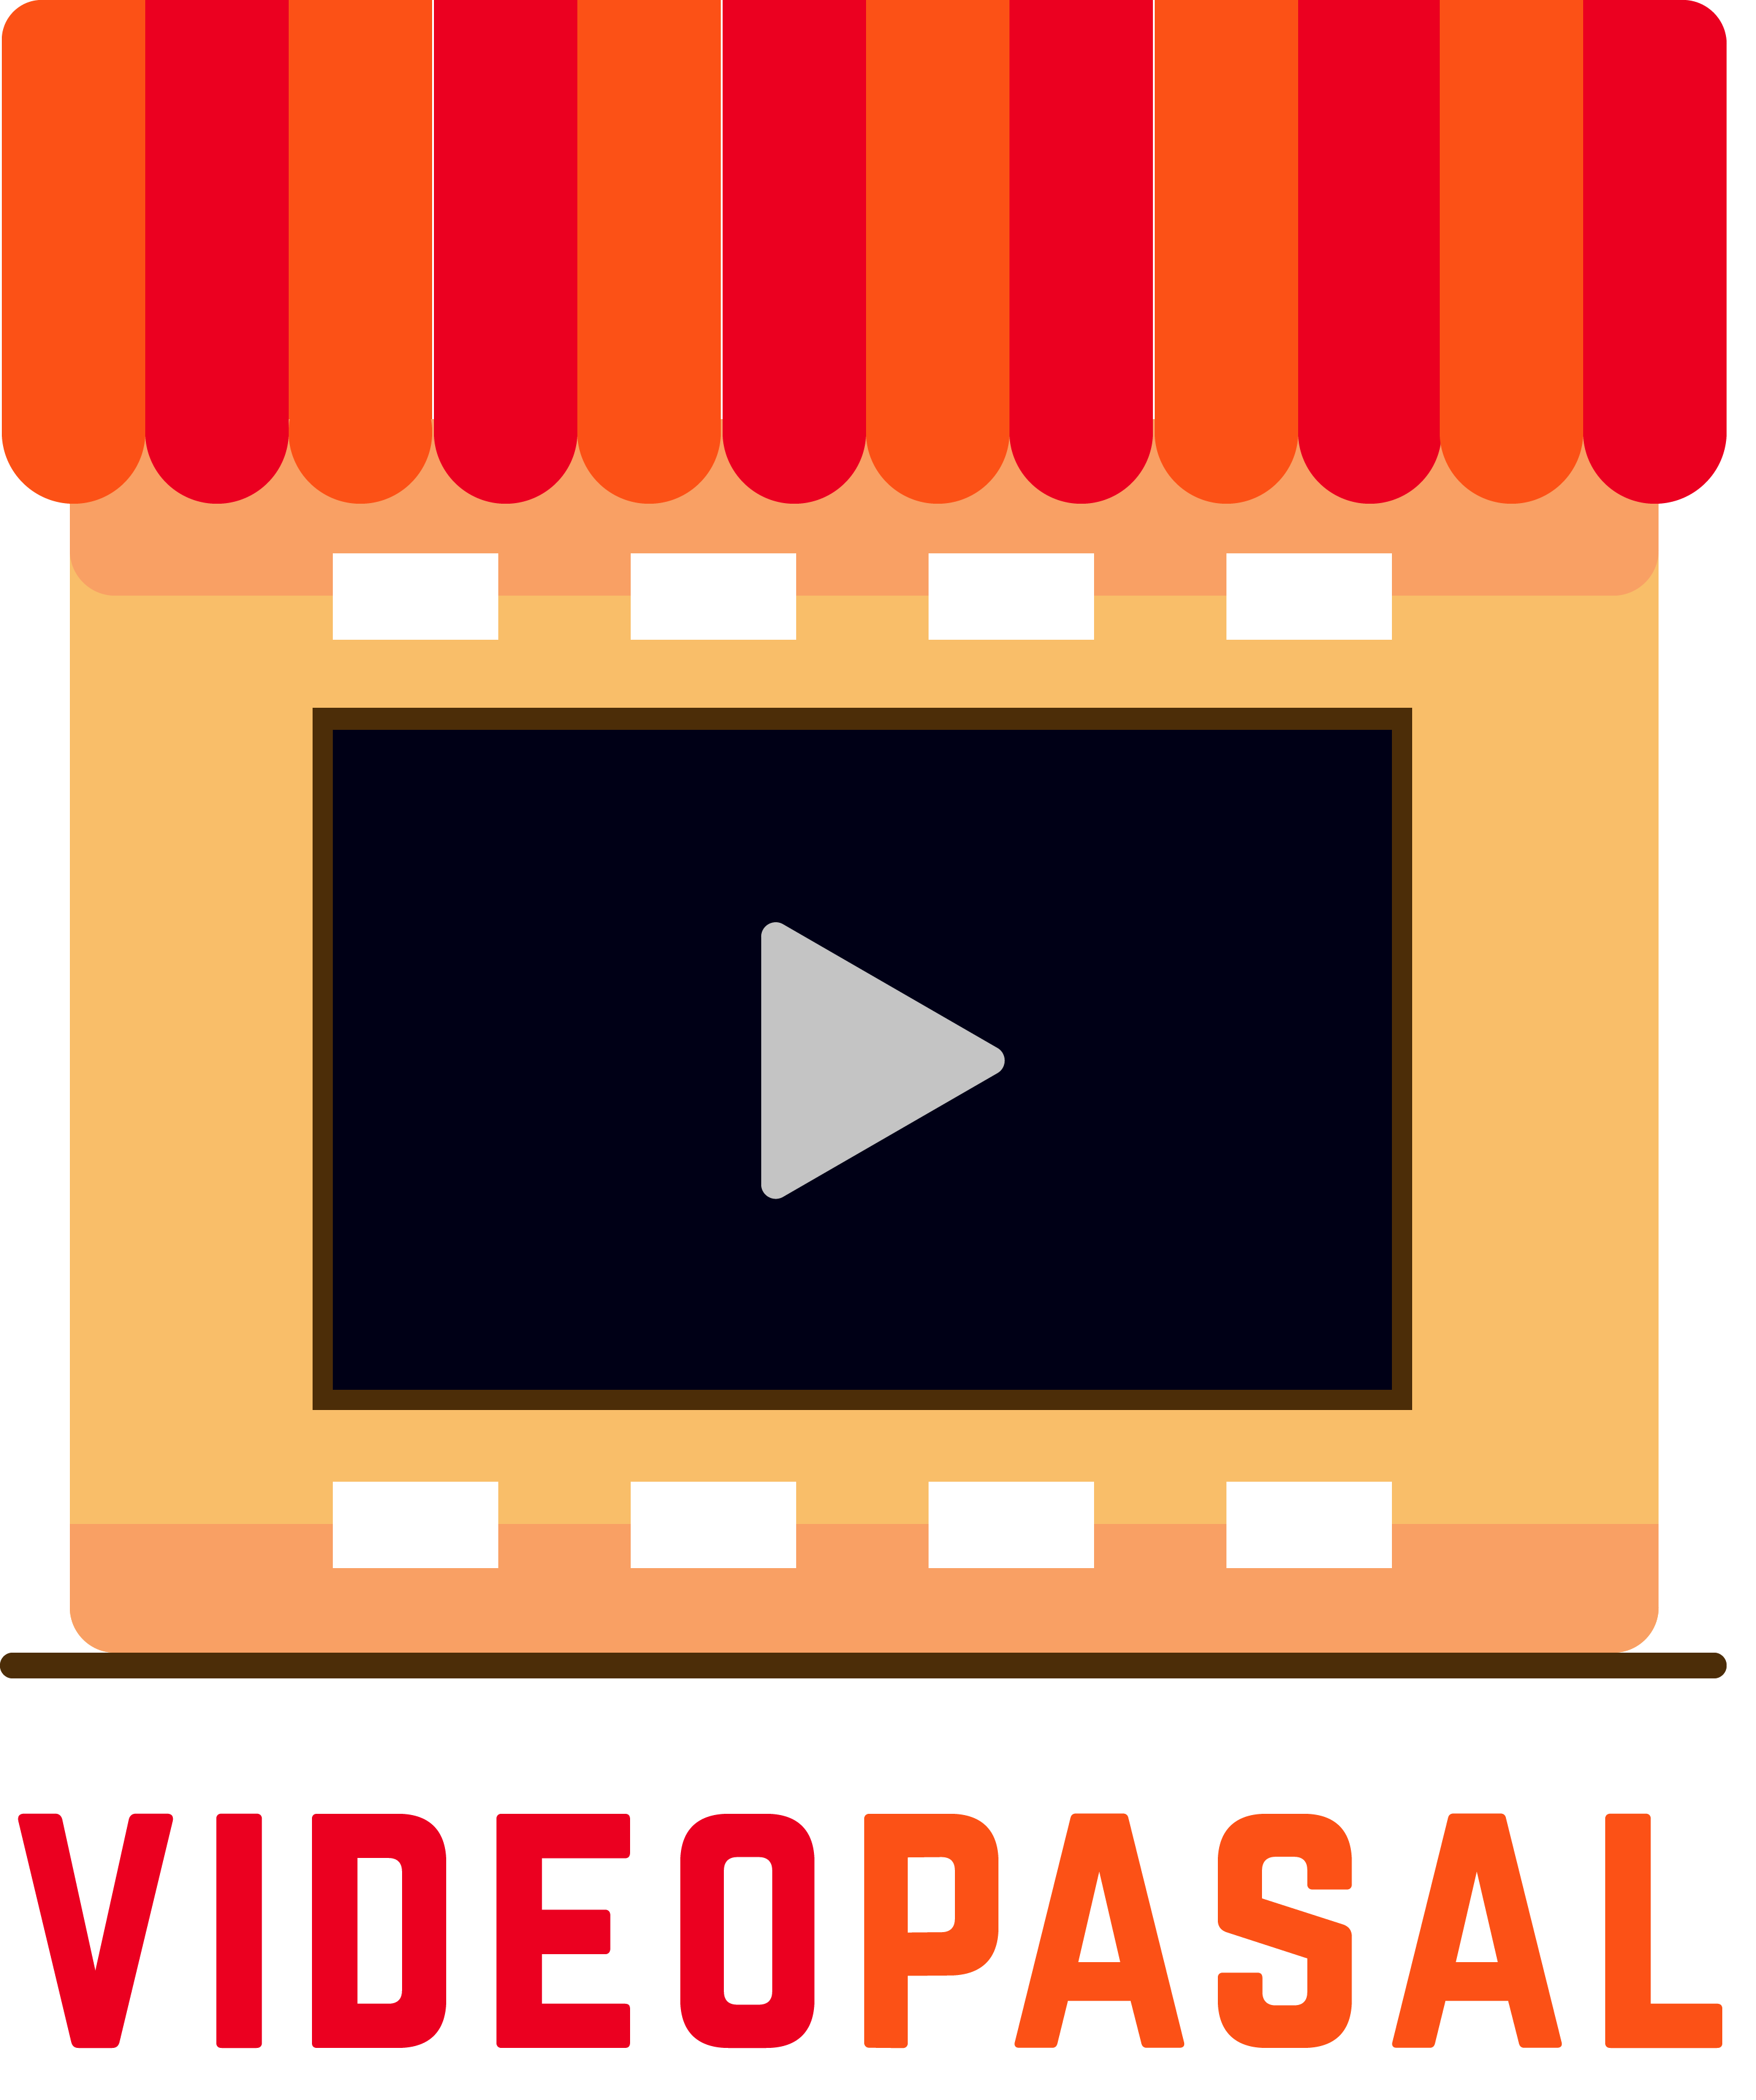 Video Pasal